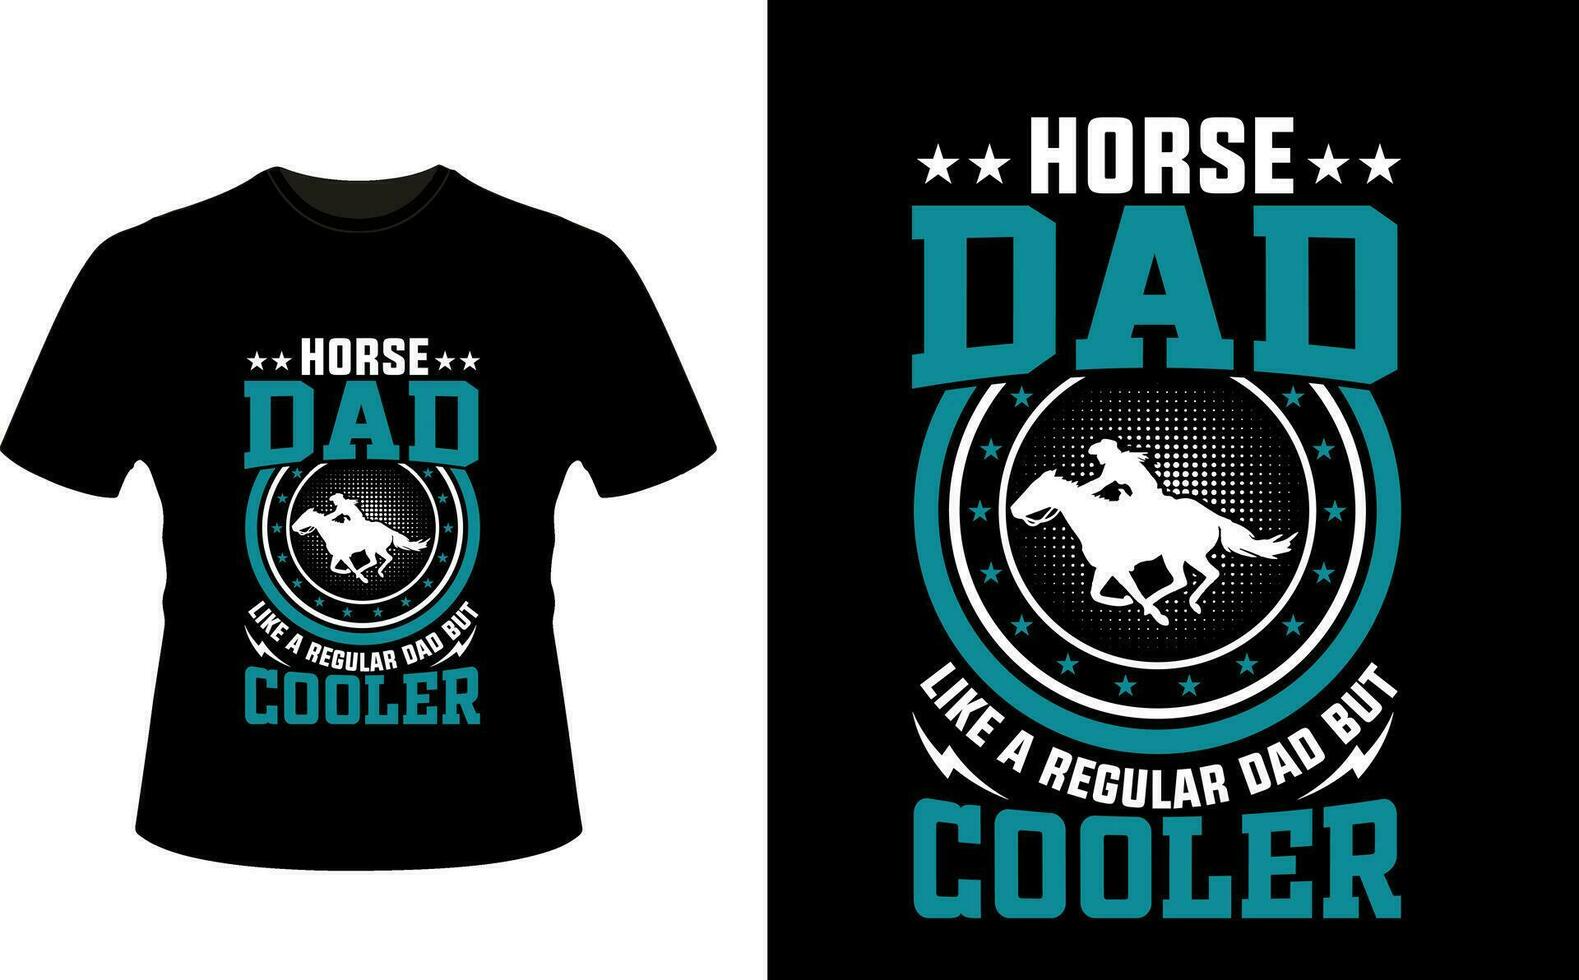 caballo papá me gusta un regular papá pero enfriador o papá papá camiseta diseño o padre día t camisa diseño vector